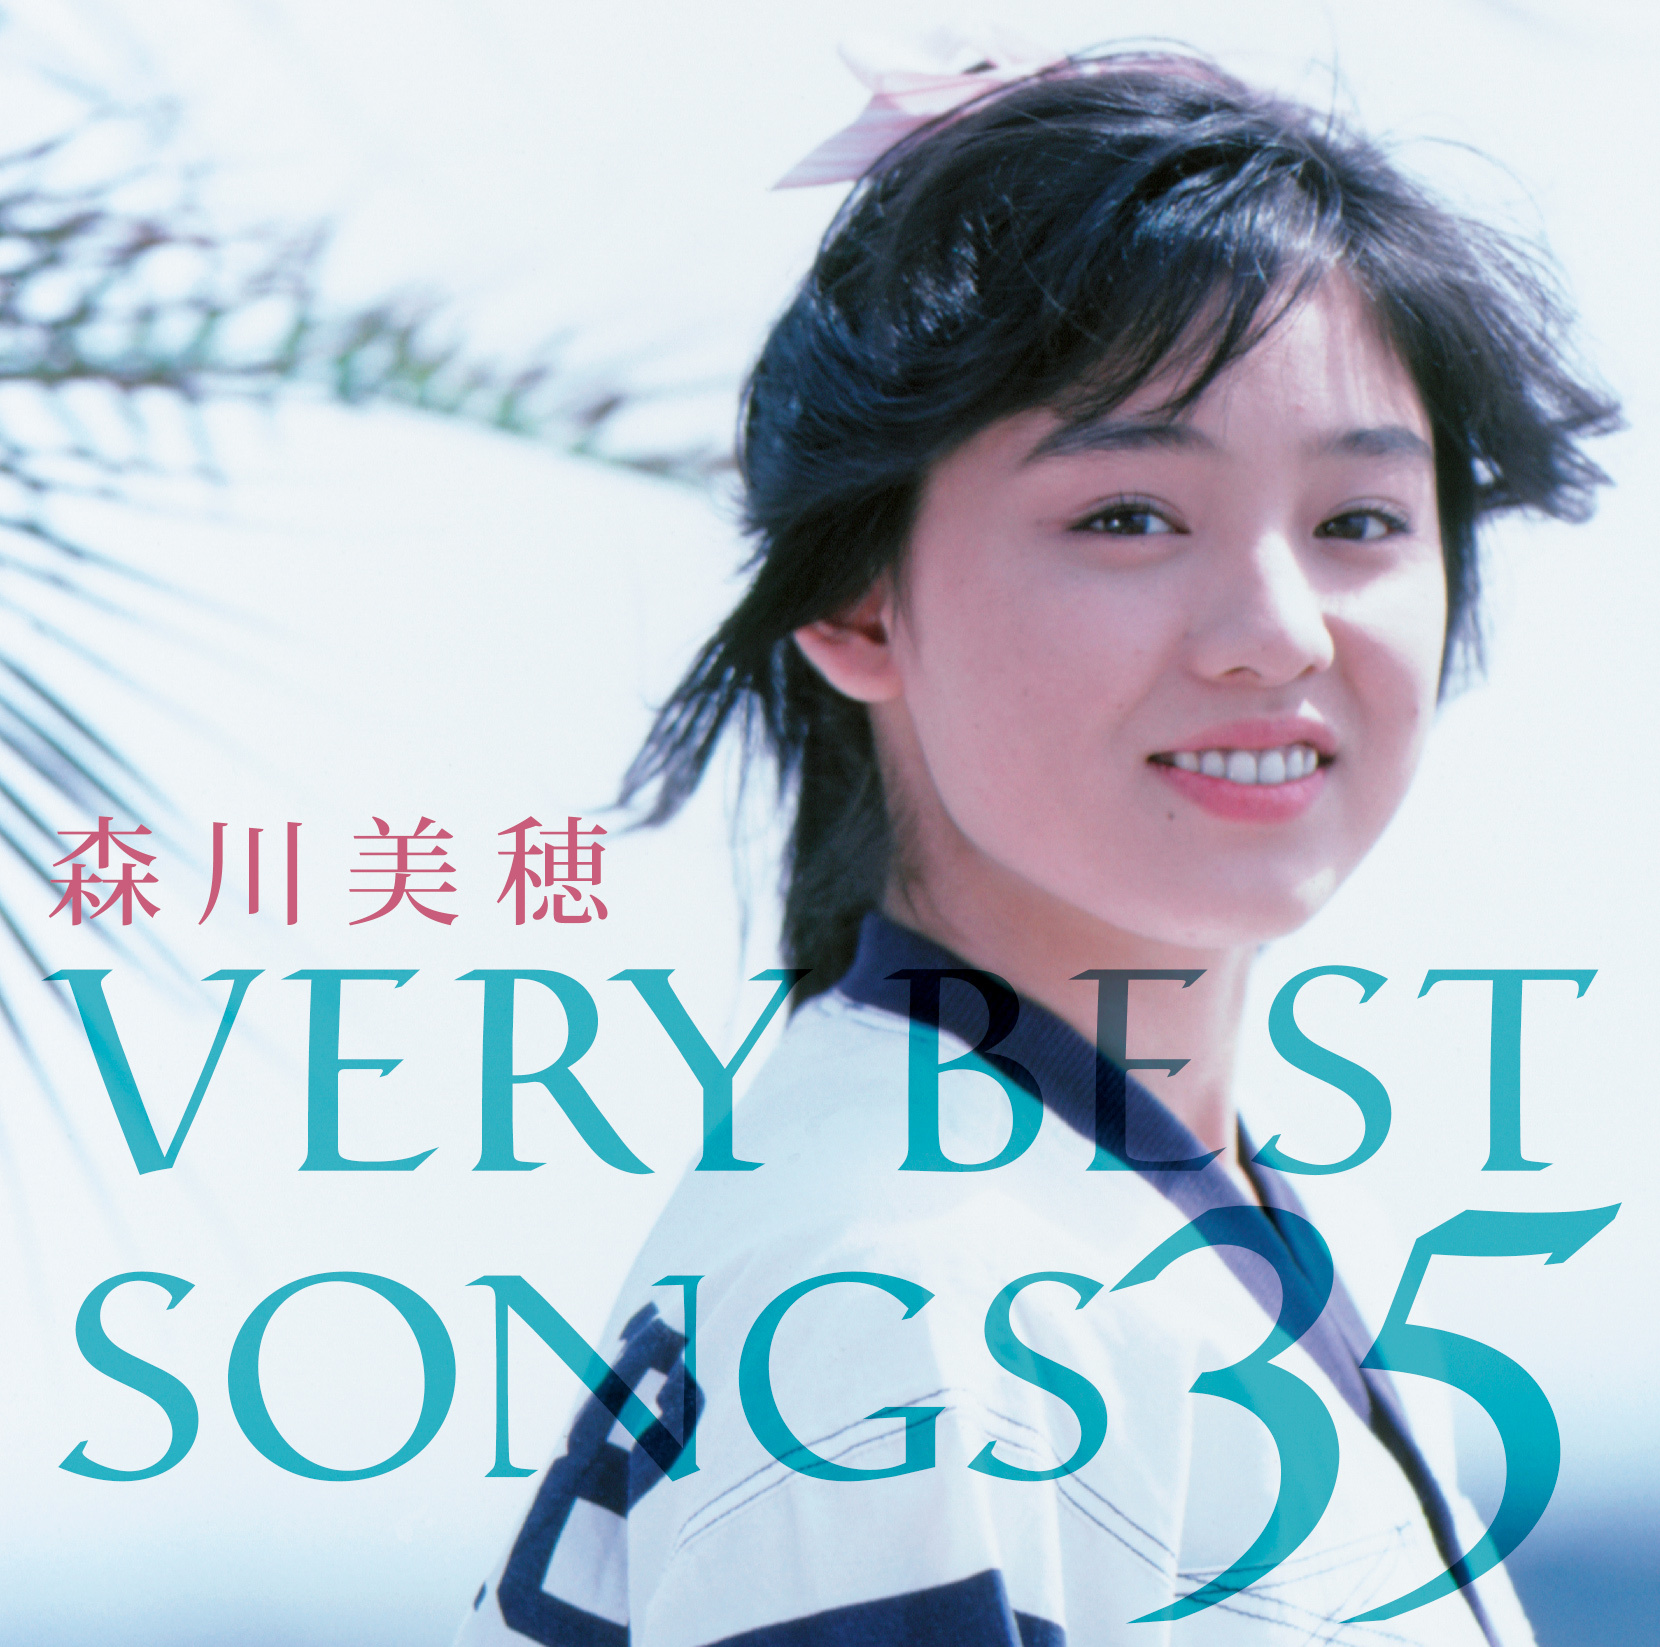 森川美穂 VERY BEST SONGS 35